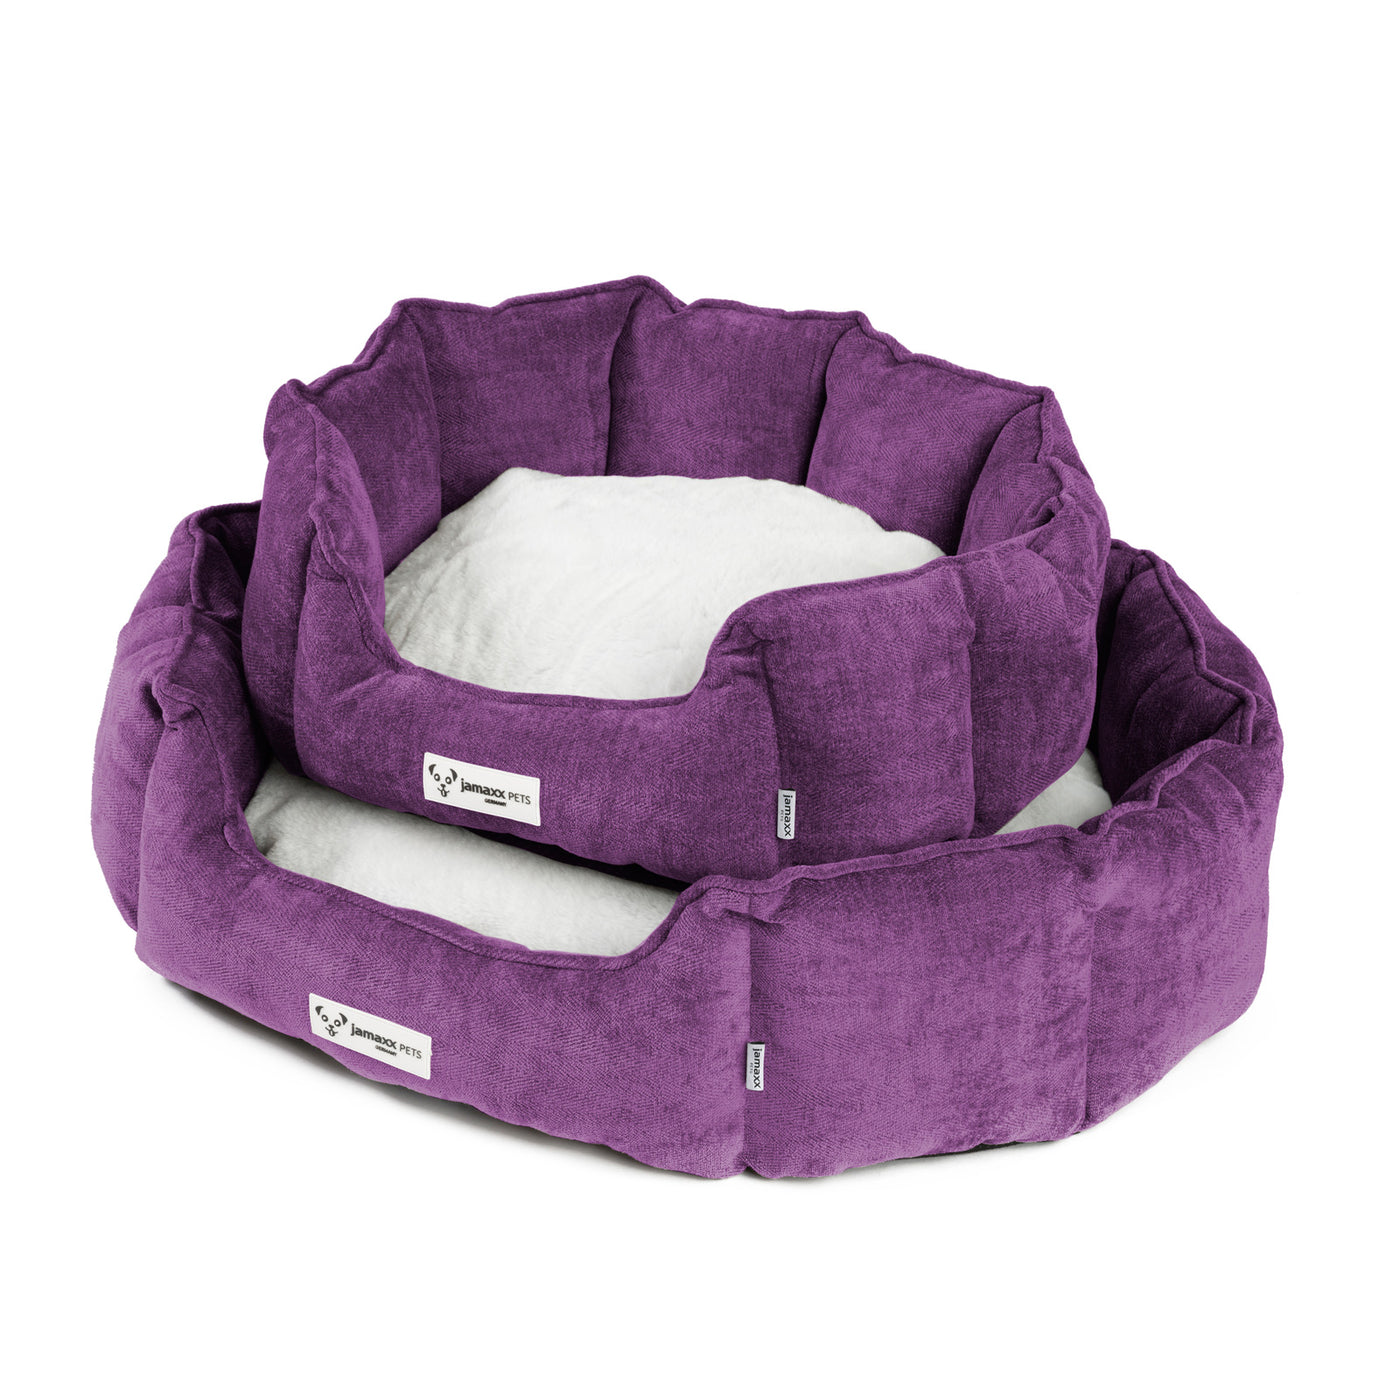 Das Hundebett in klassisch ovaler Hundekörbchen Form gibt es für kleine und mittelgroße Hunde, hier in der Trendfarbe Purple.